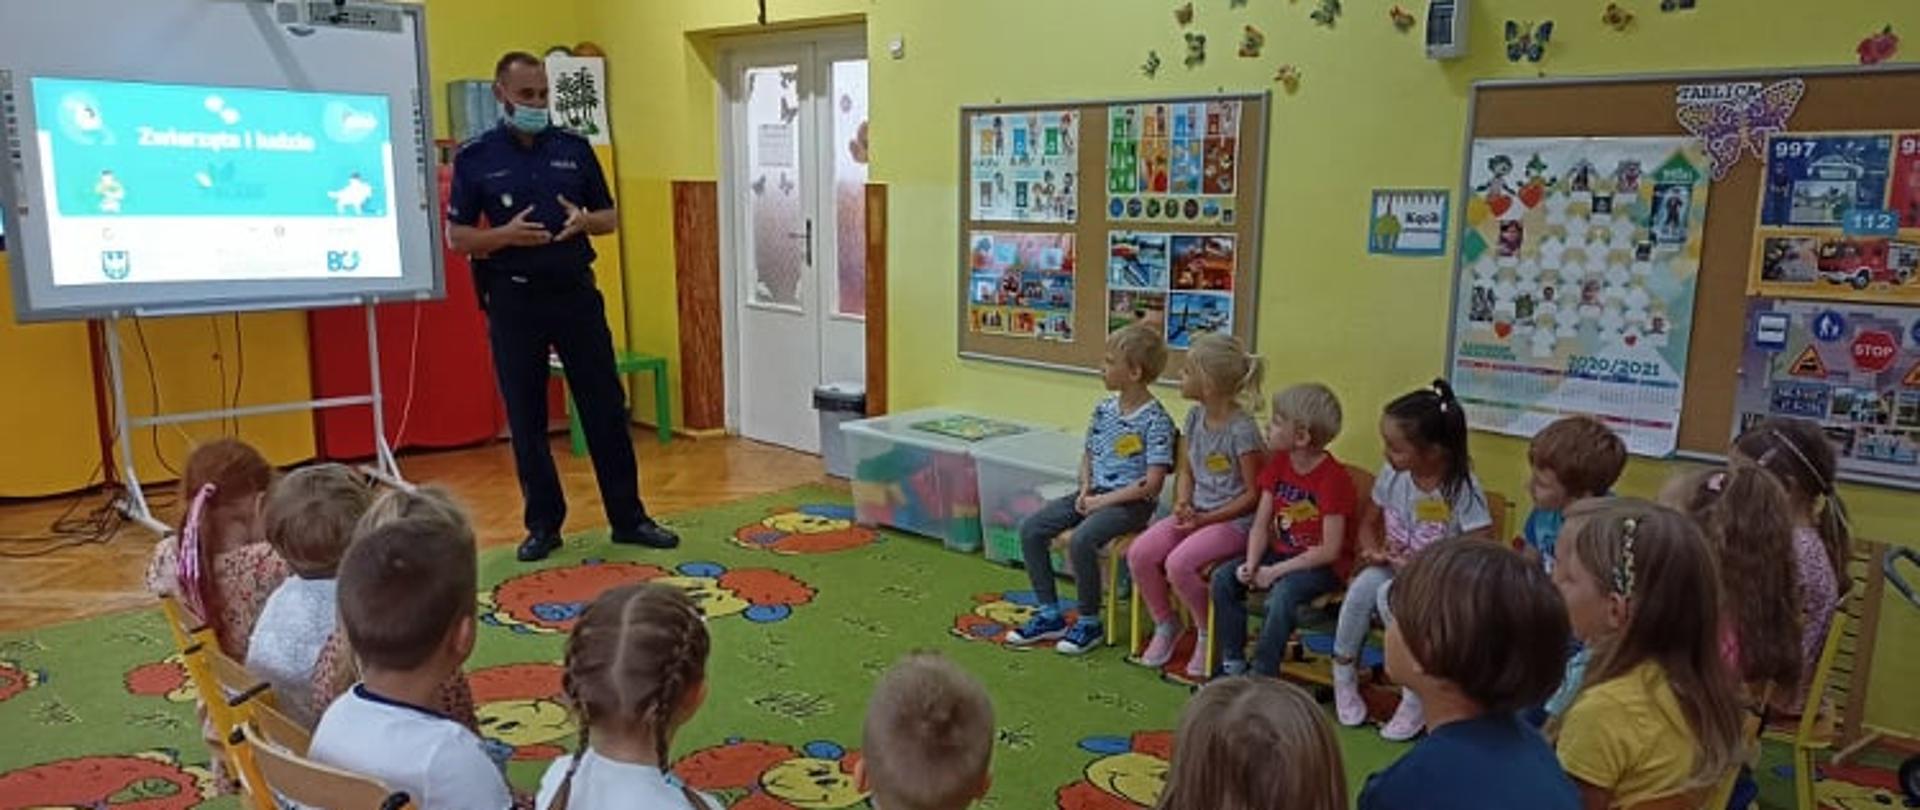 Grupa dzieci siedzi w kręgu i słucha policjanta prowadzącego warsztaty